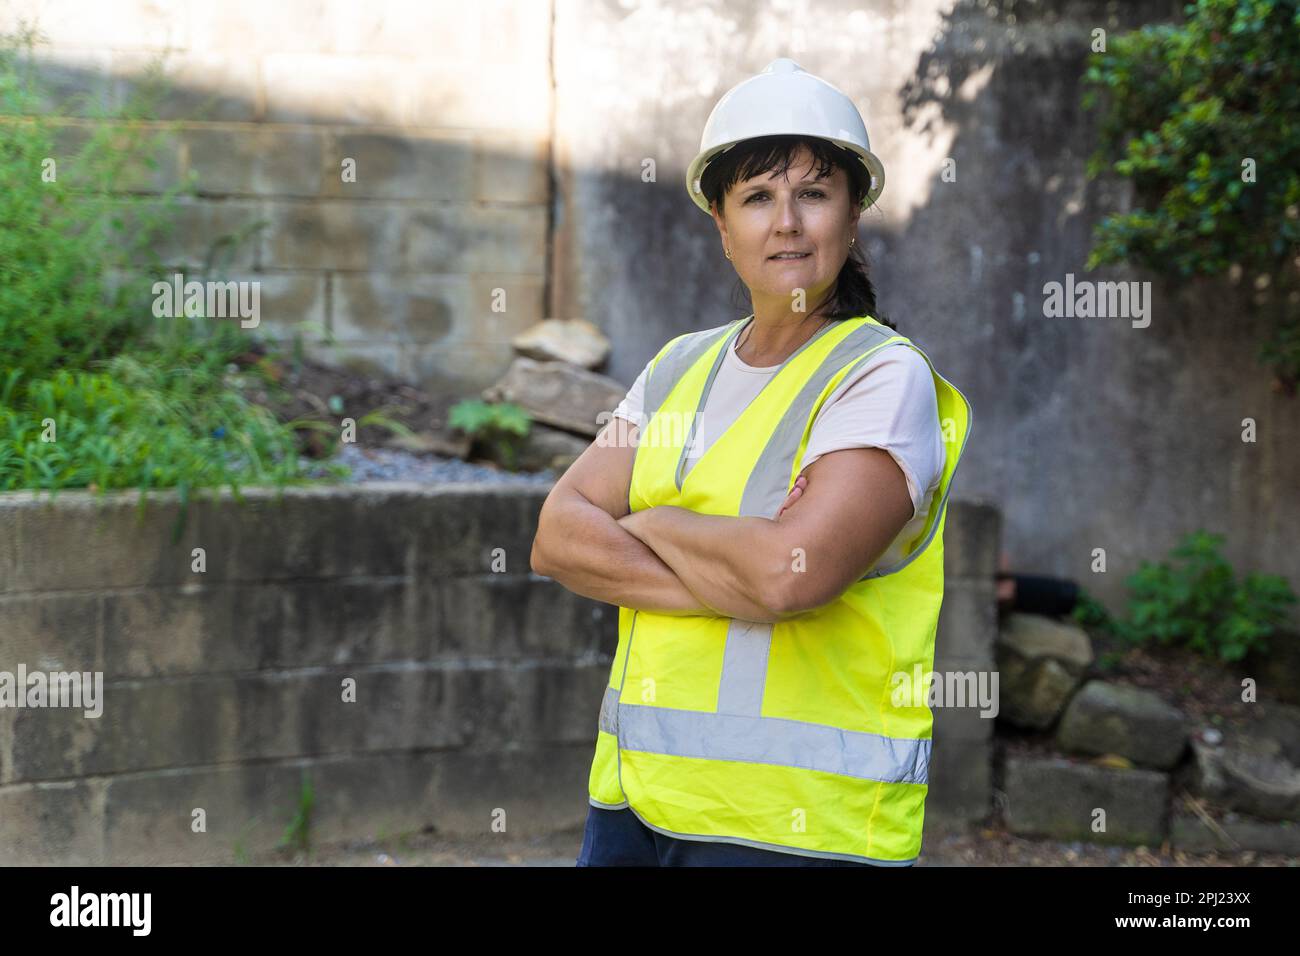 Mujer trabajadora industrial madura. Carretera, sitio de construcción, residuos Foto de stock